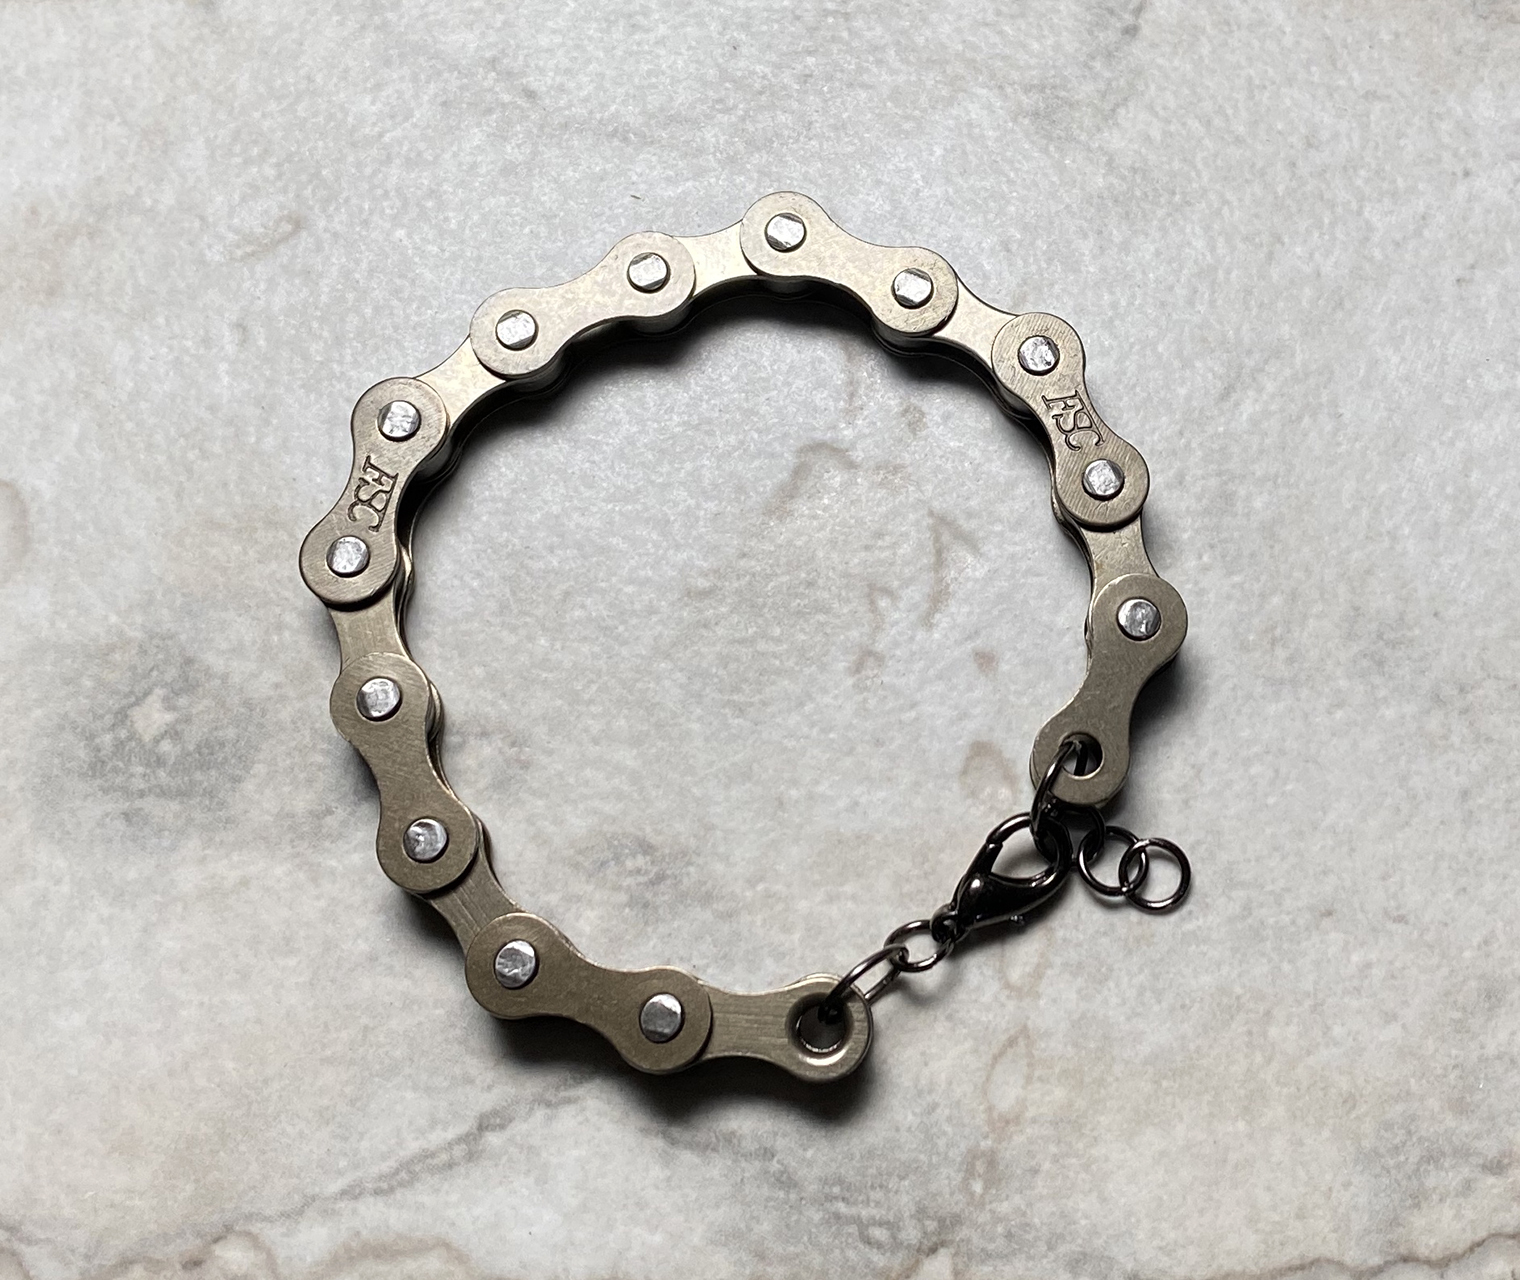 Bike Chain, Jewelry